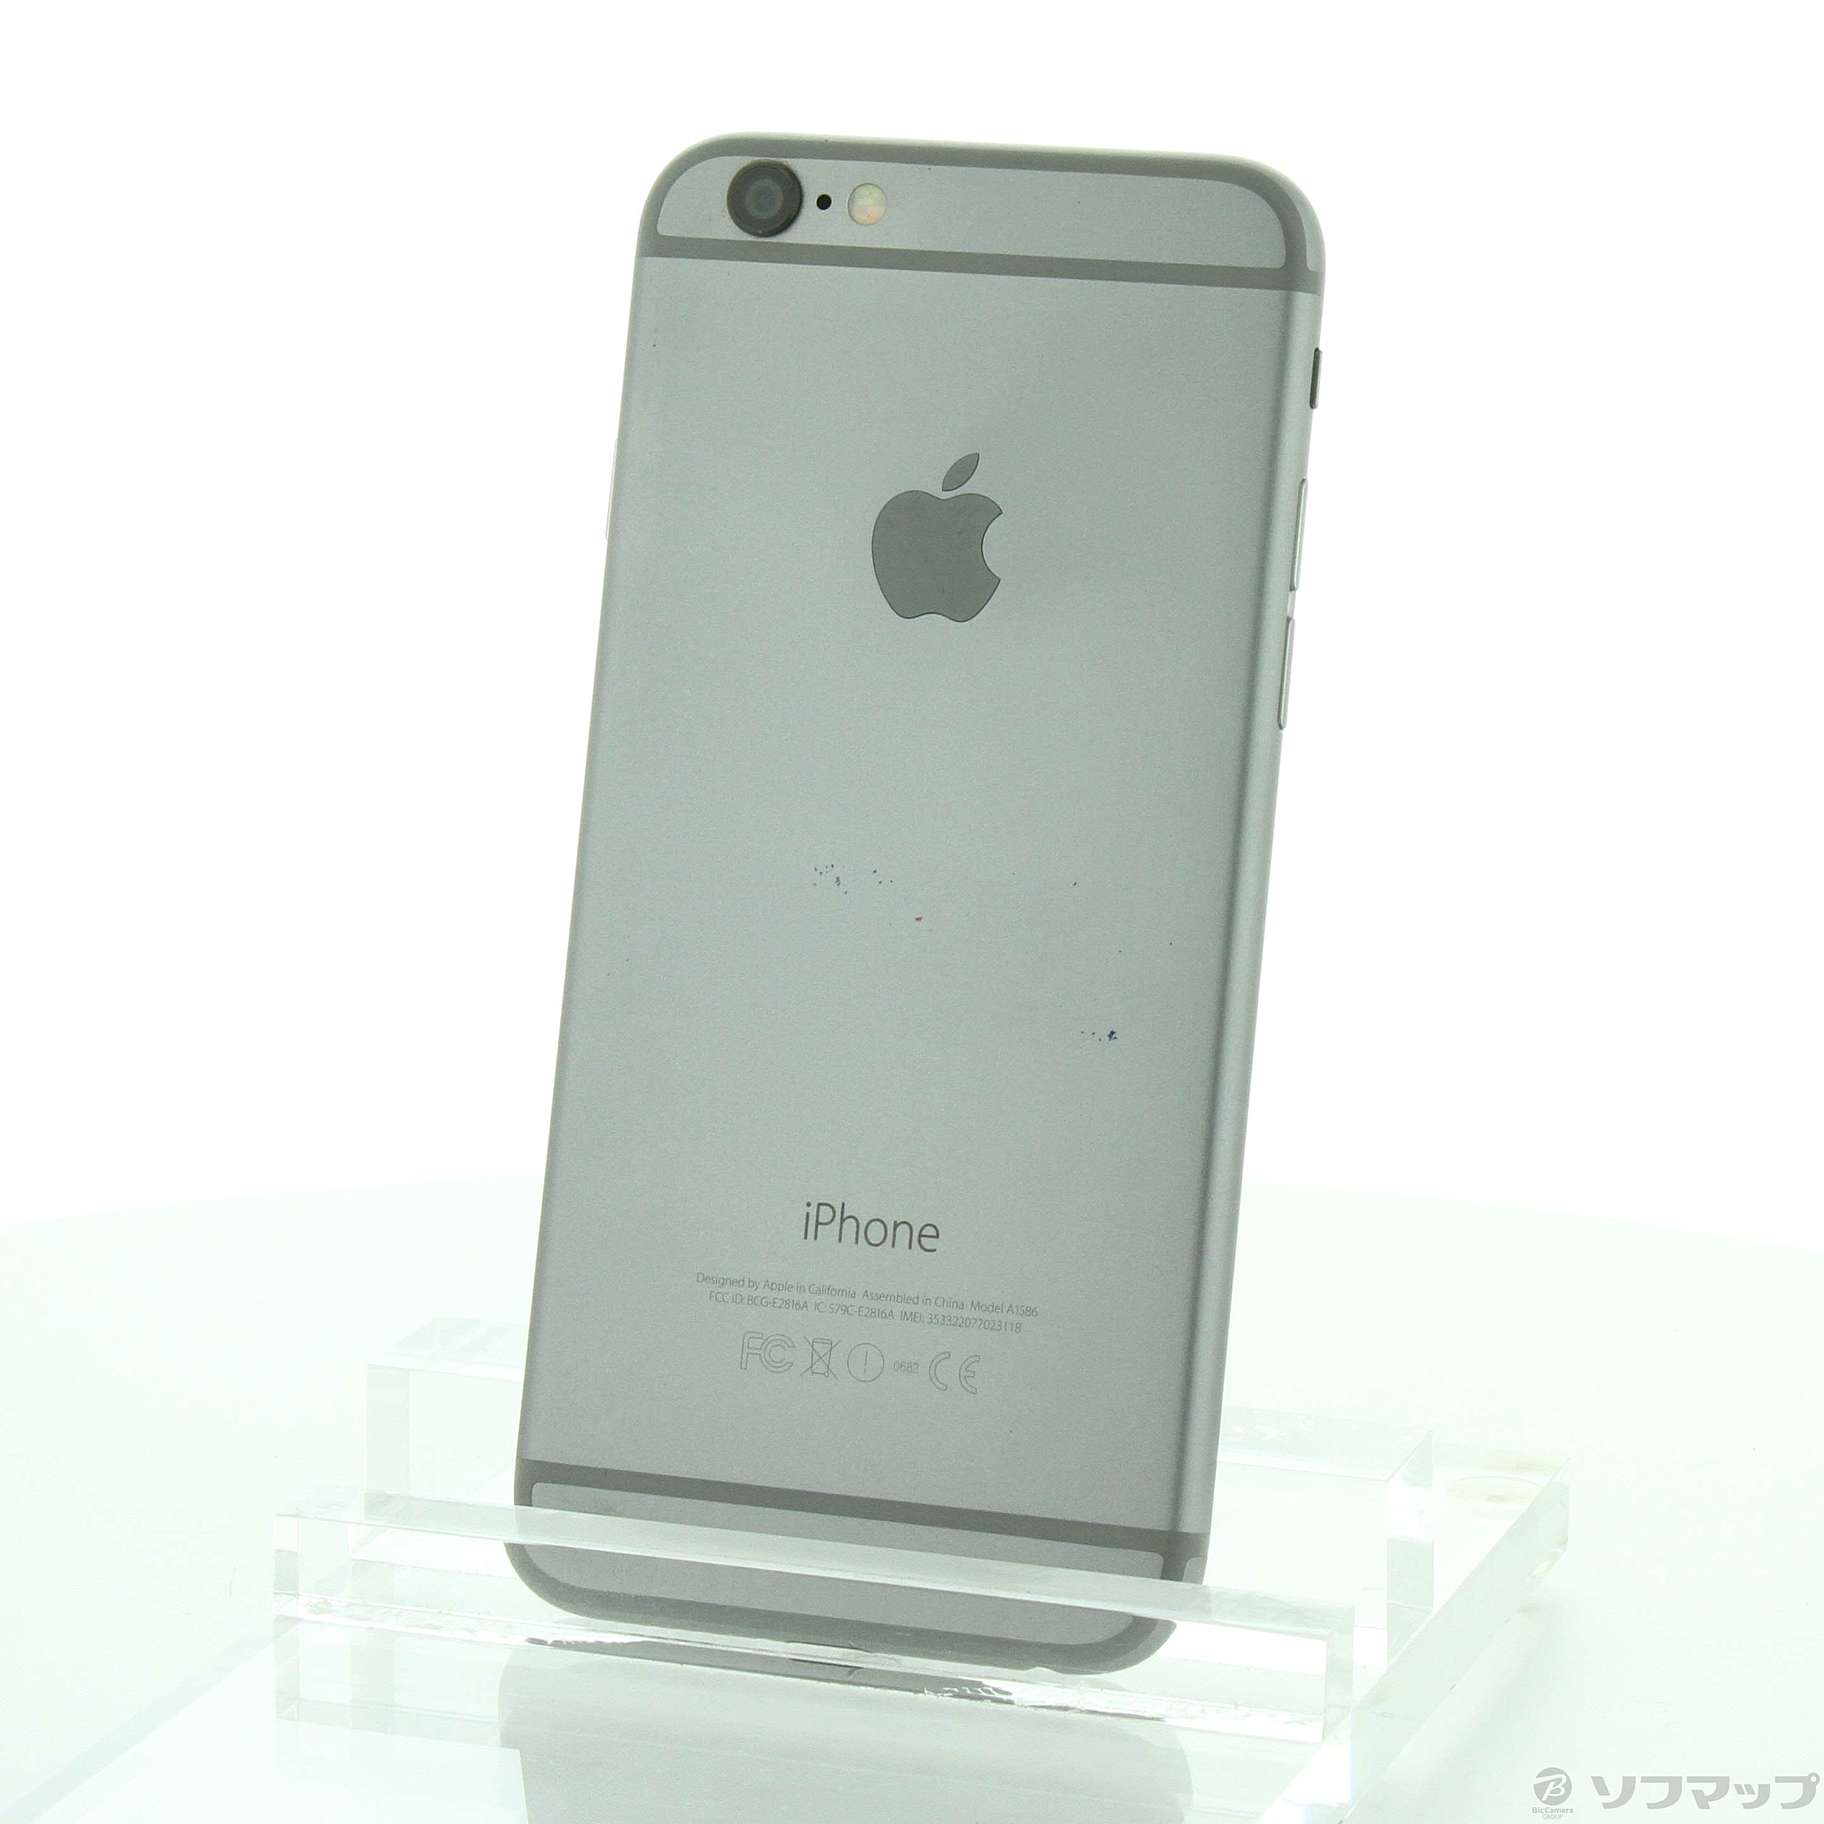 iPhone6s 本体 64GB スペースグレー au apple